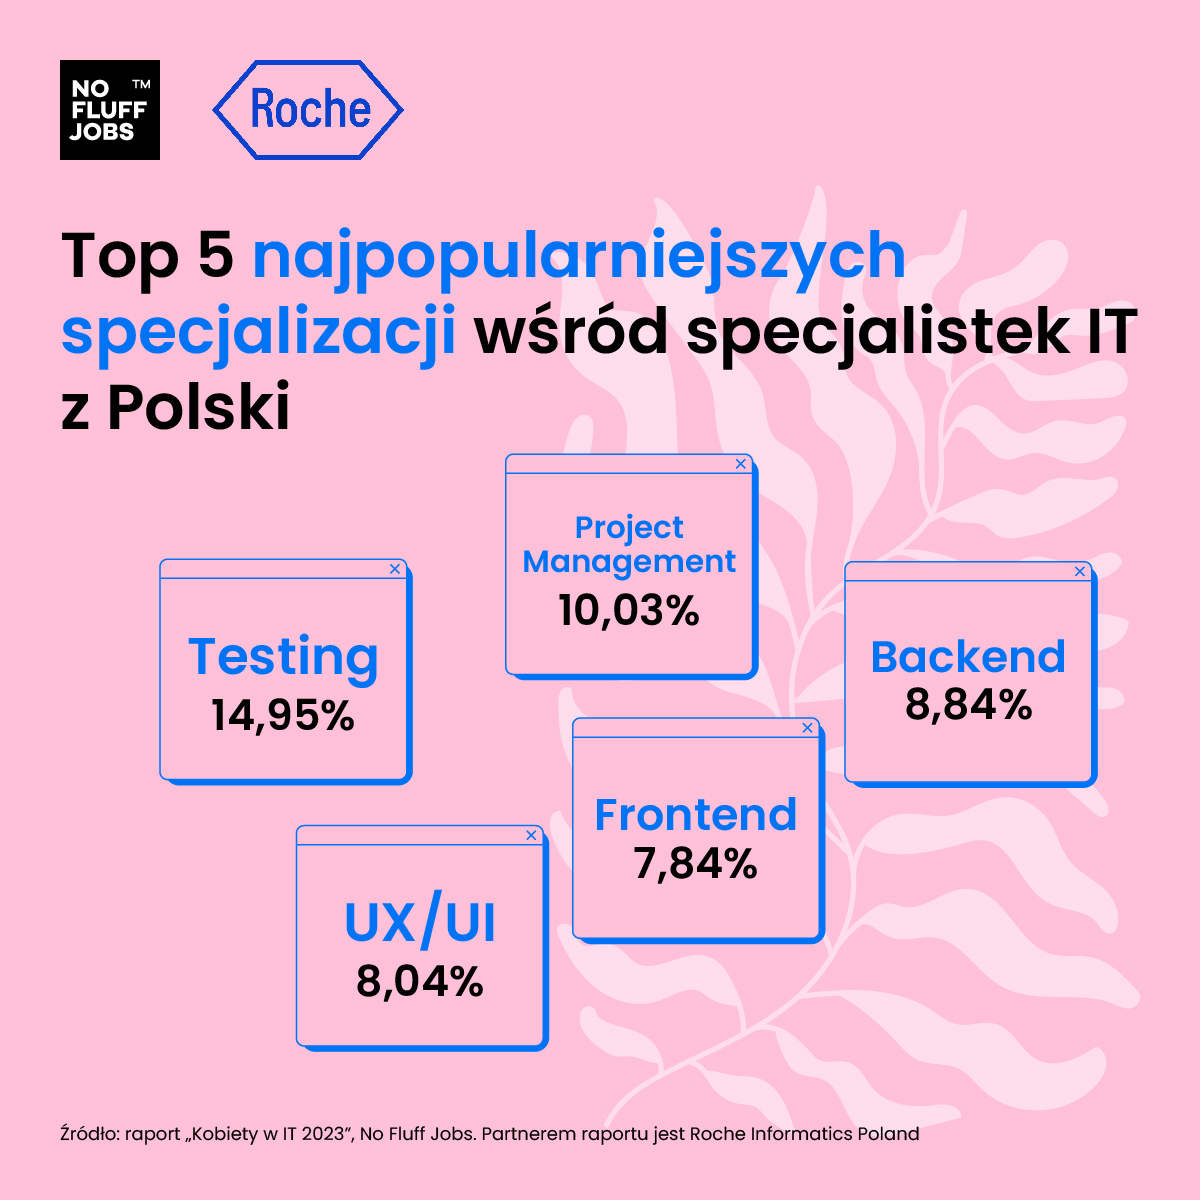 Źródło: Kobiety w IT 2023, No Fluff Jobs, Roche Informatics Poland